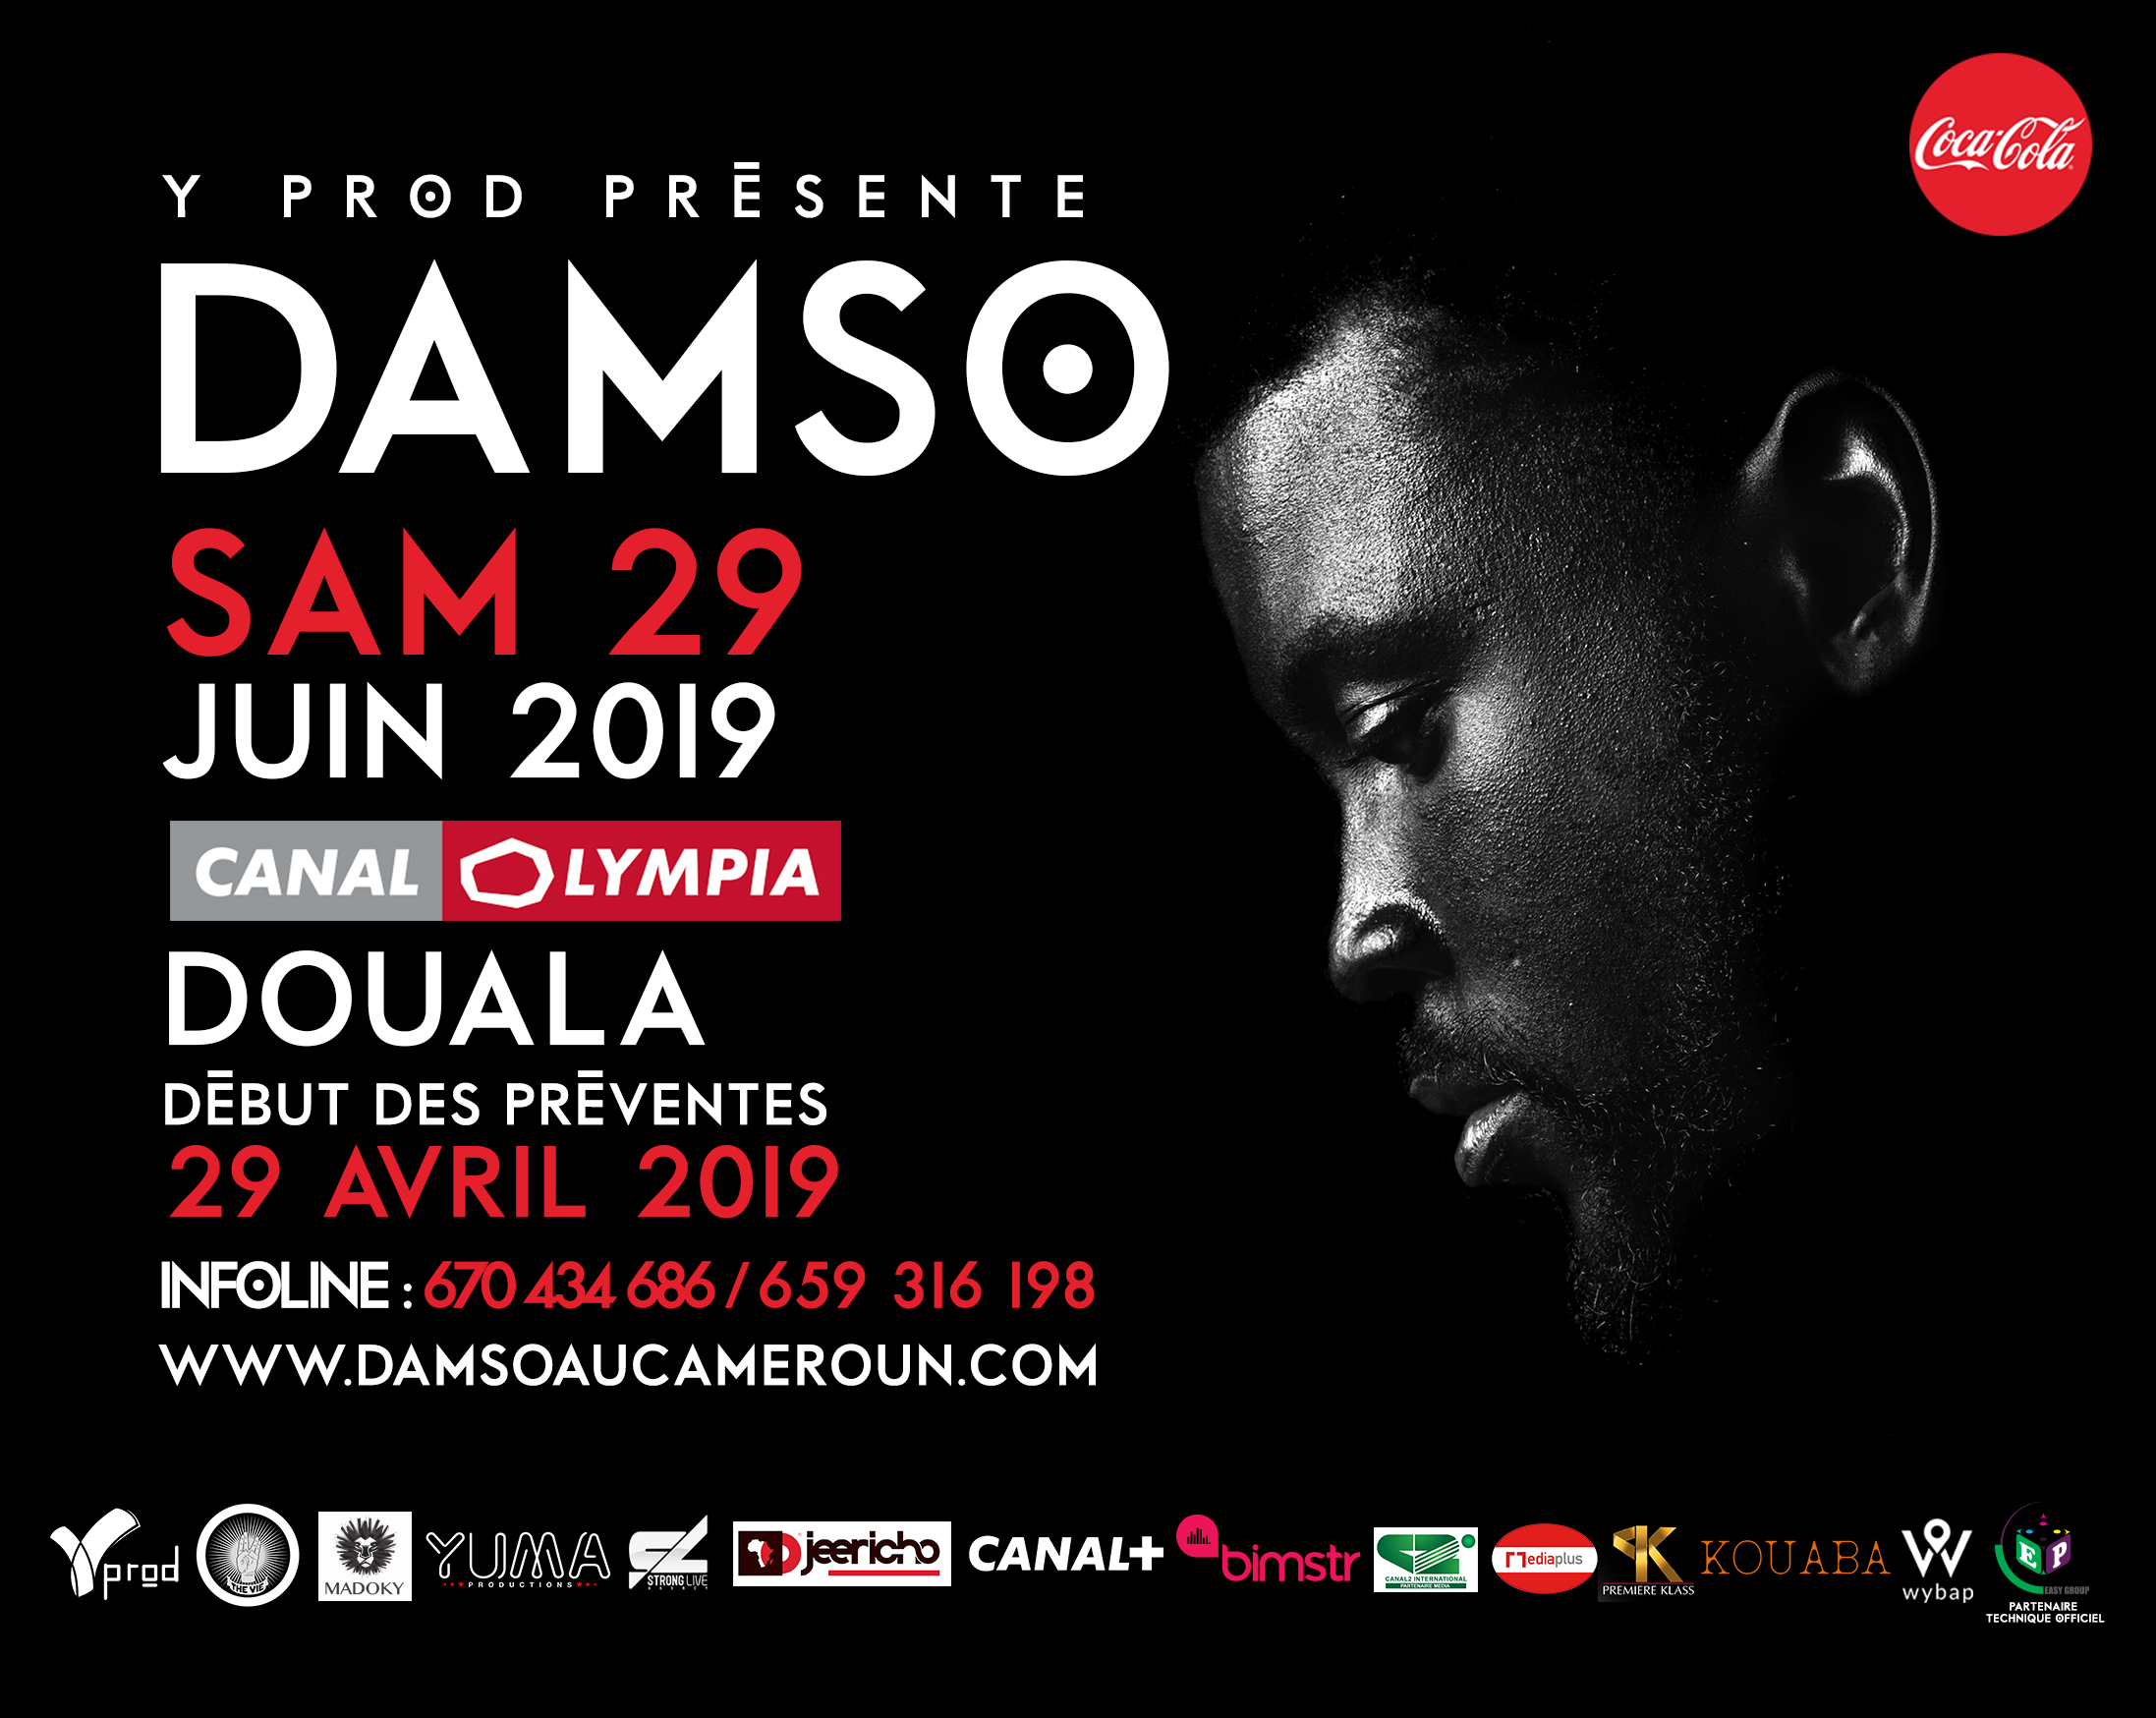 Les news de dn consulting : DAMSO en concert au Cameroun